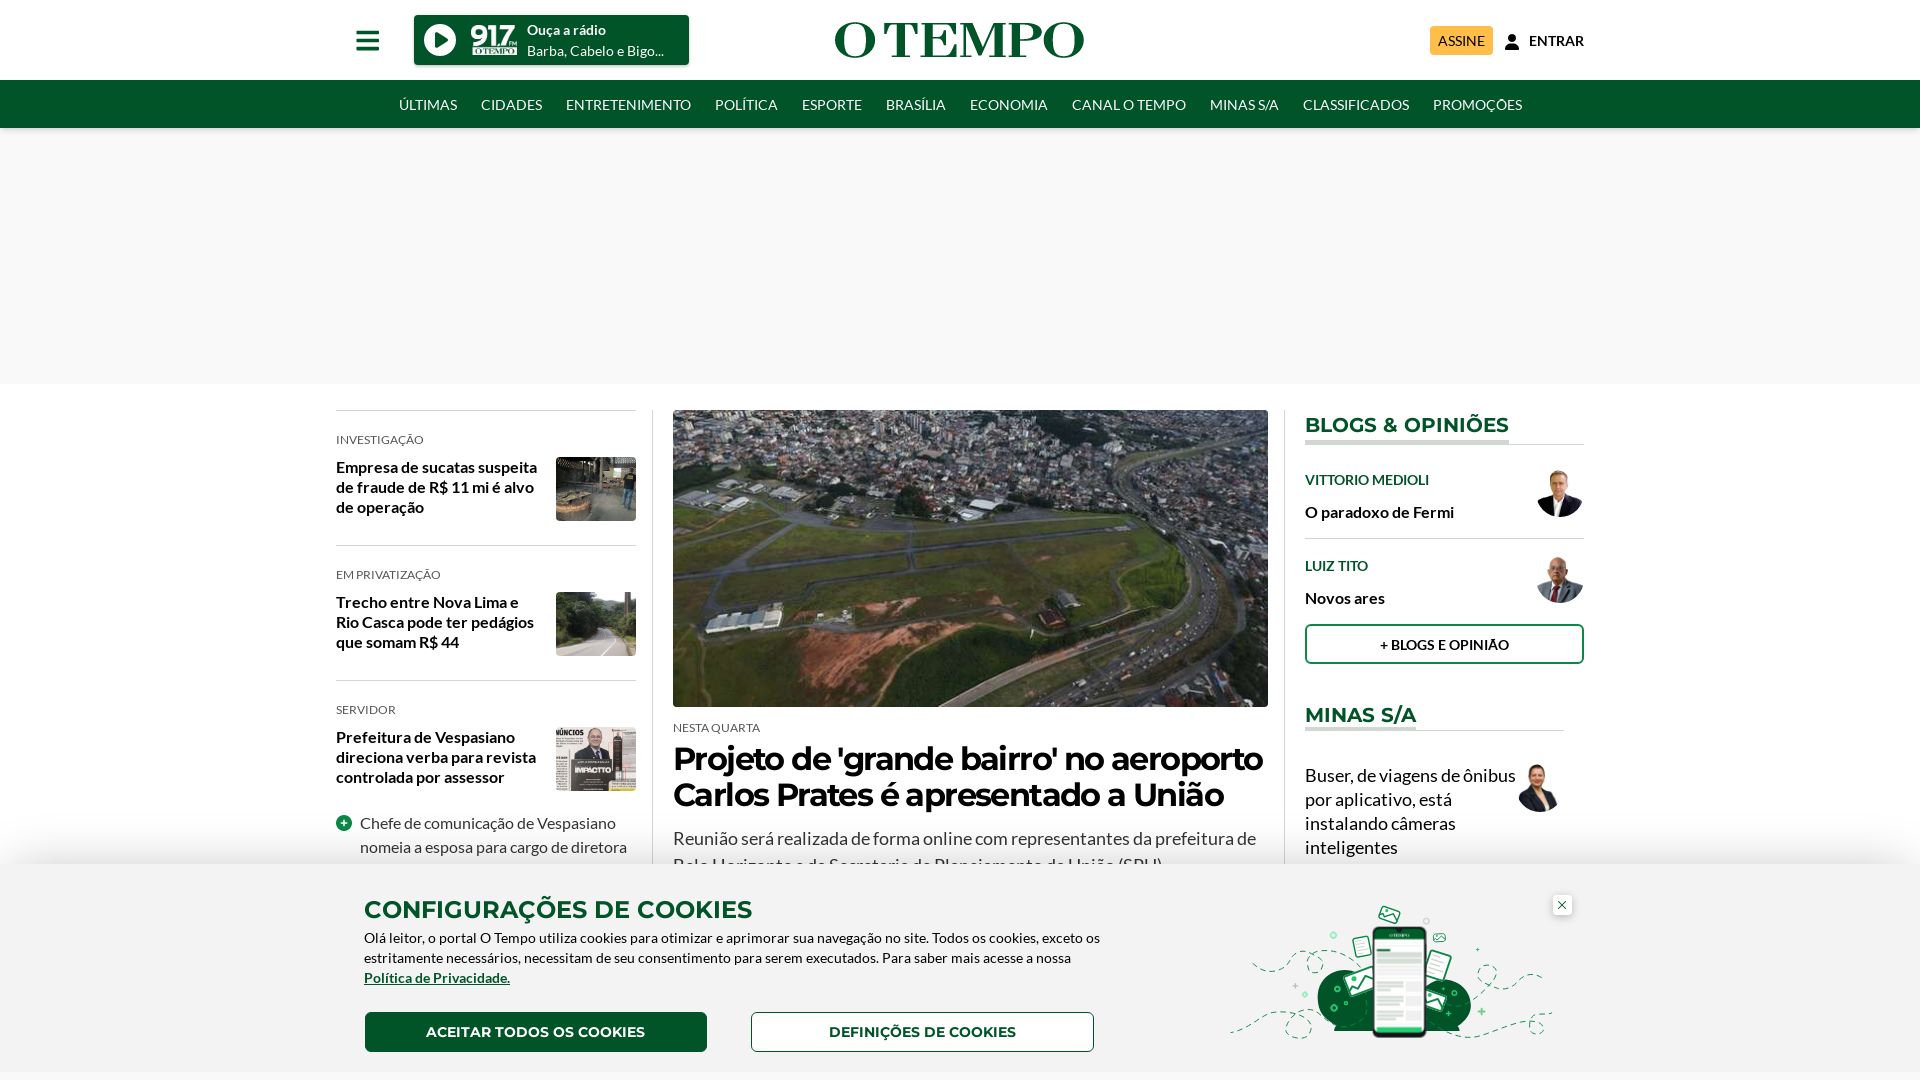 网站状态 otempo.com.br 是  在线的